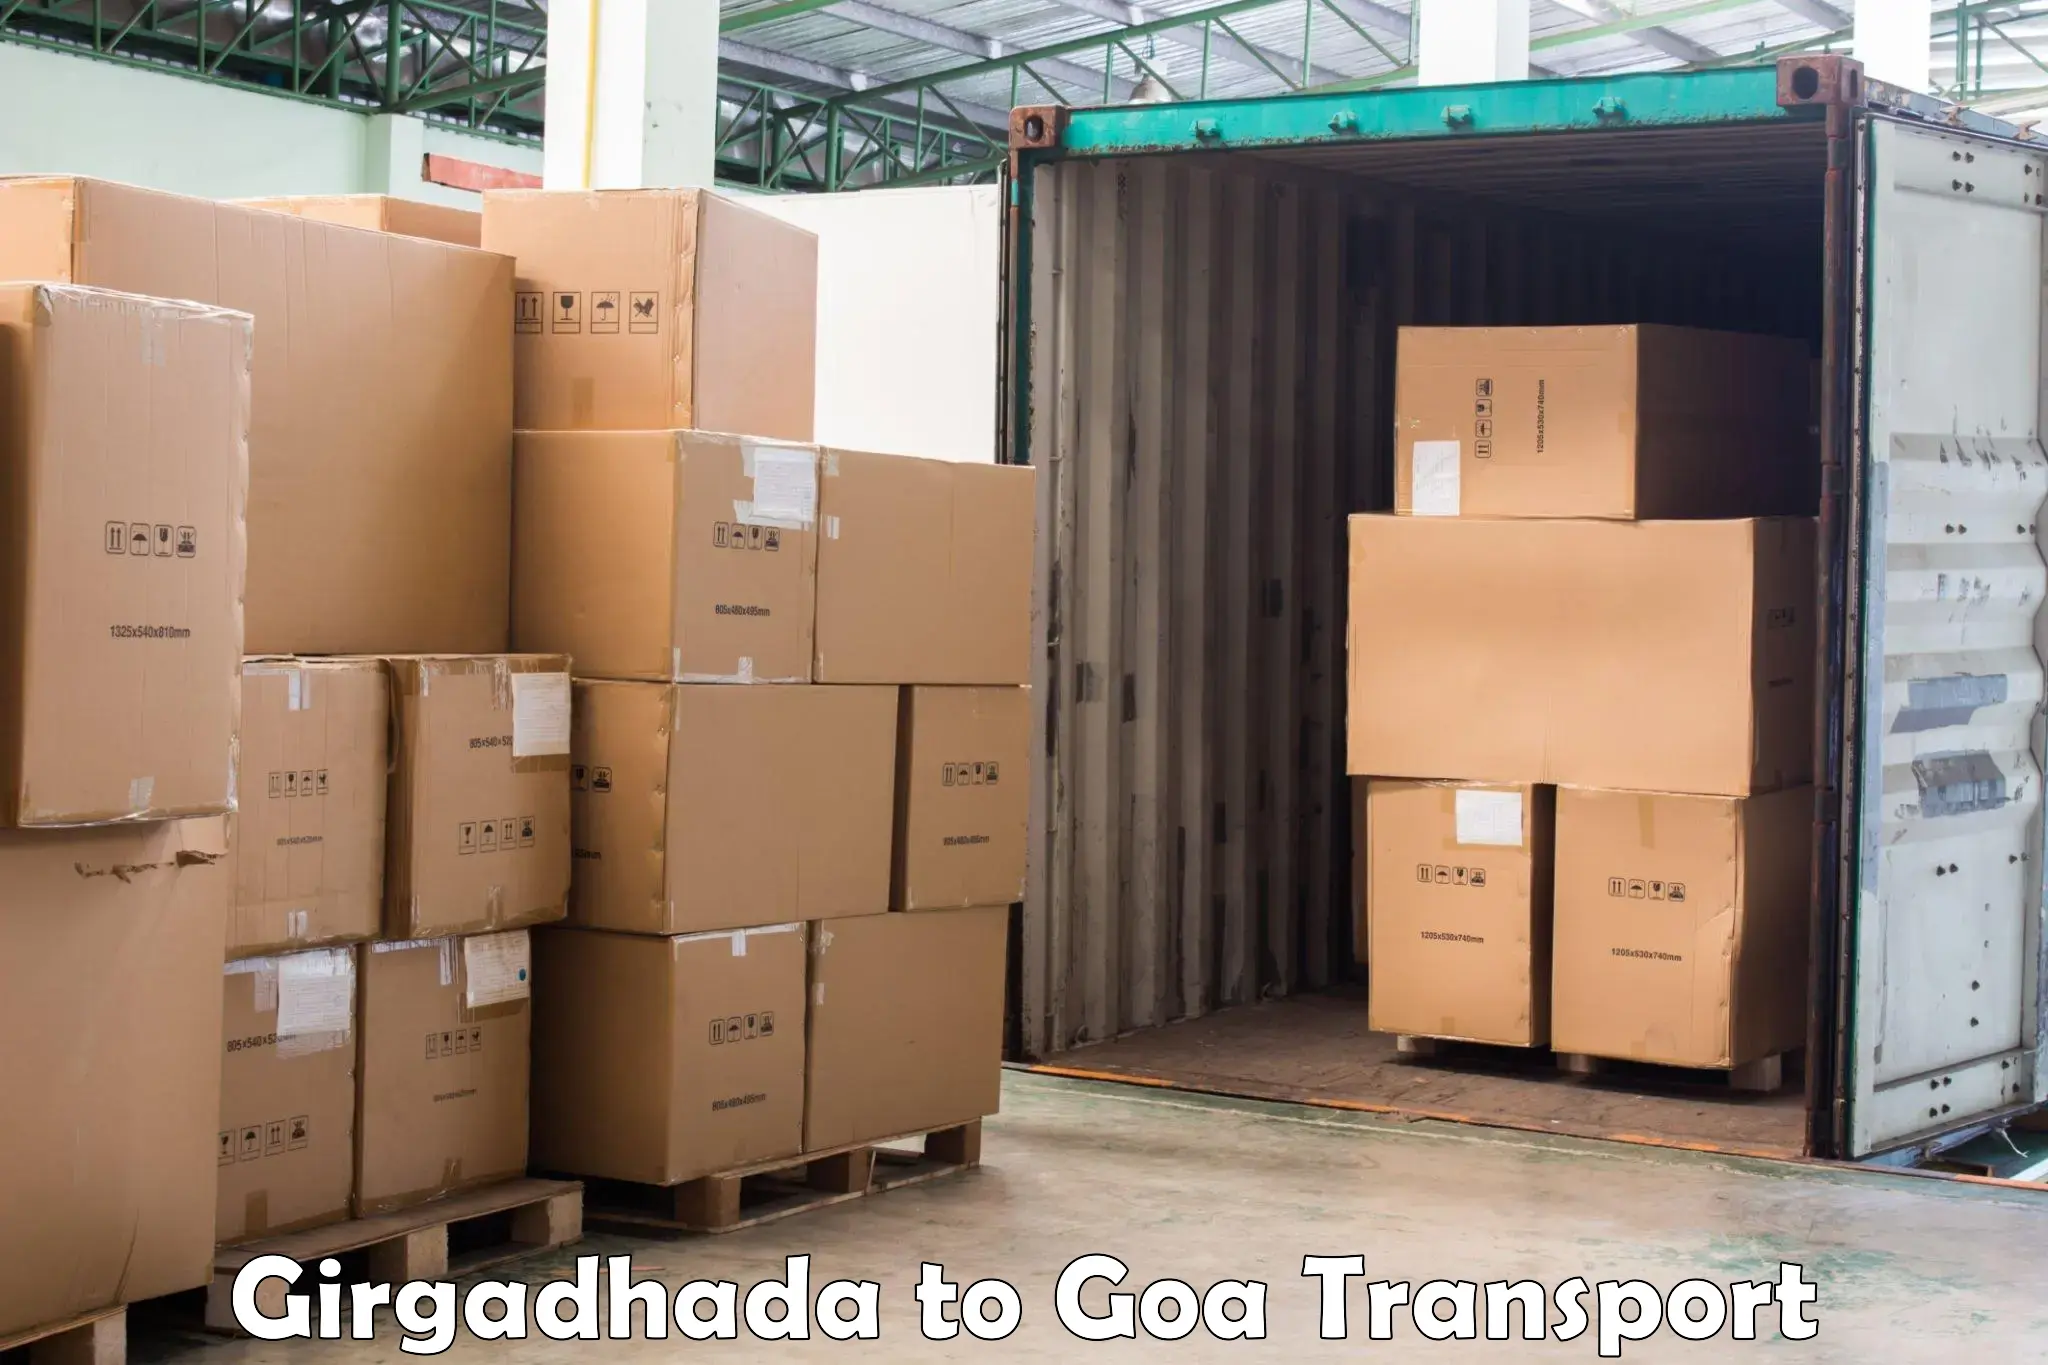 Daily transport service Girgadhada to Panjim